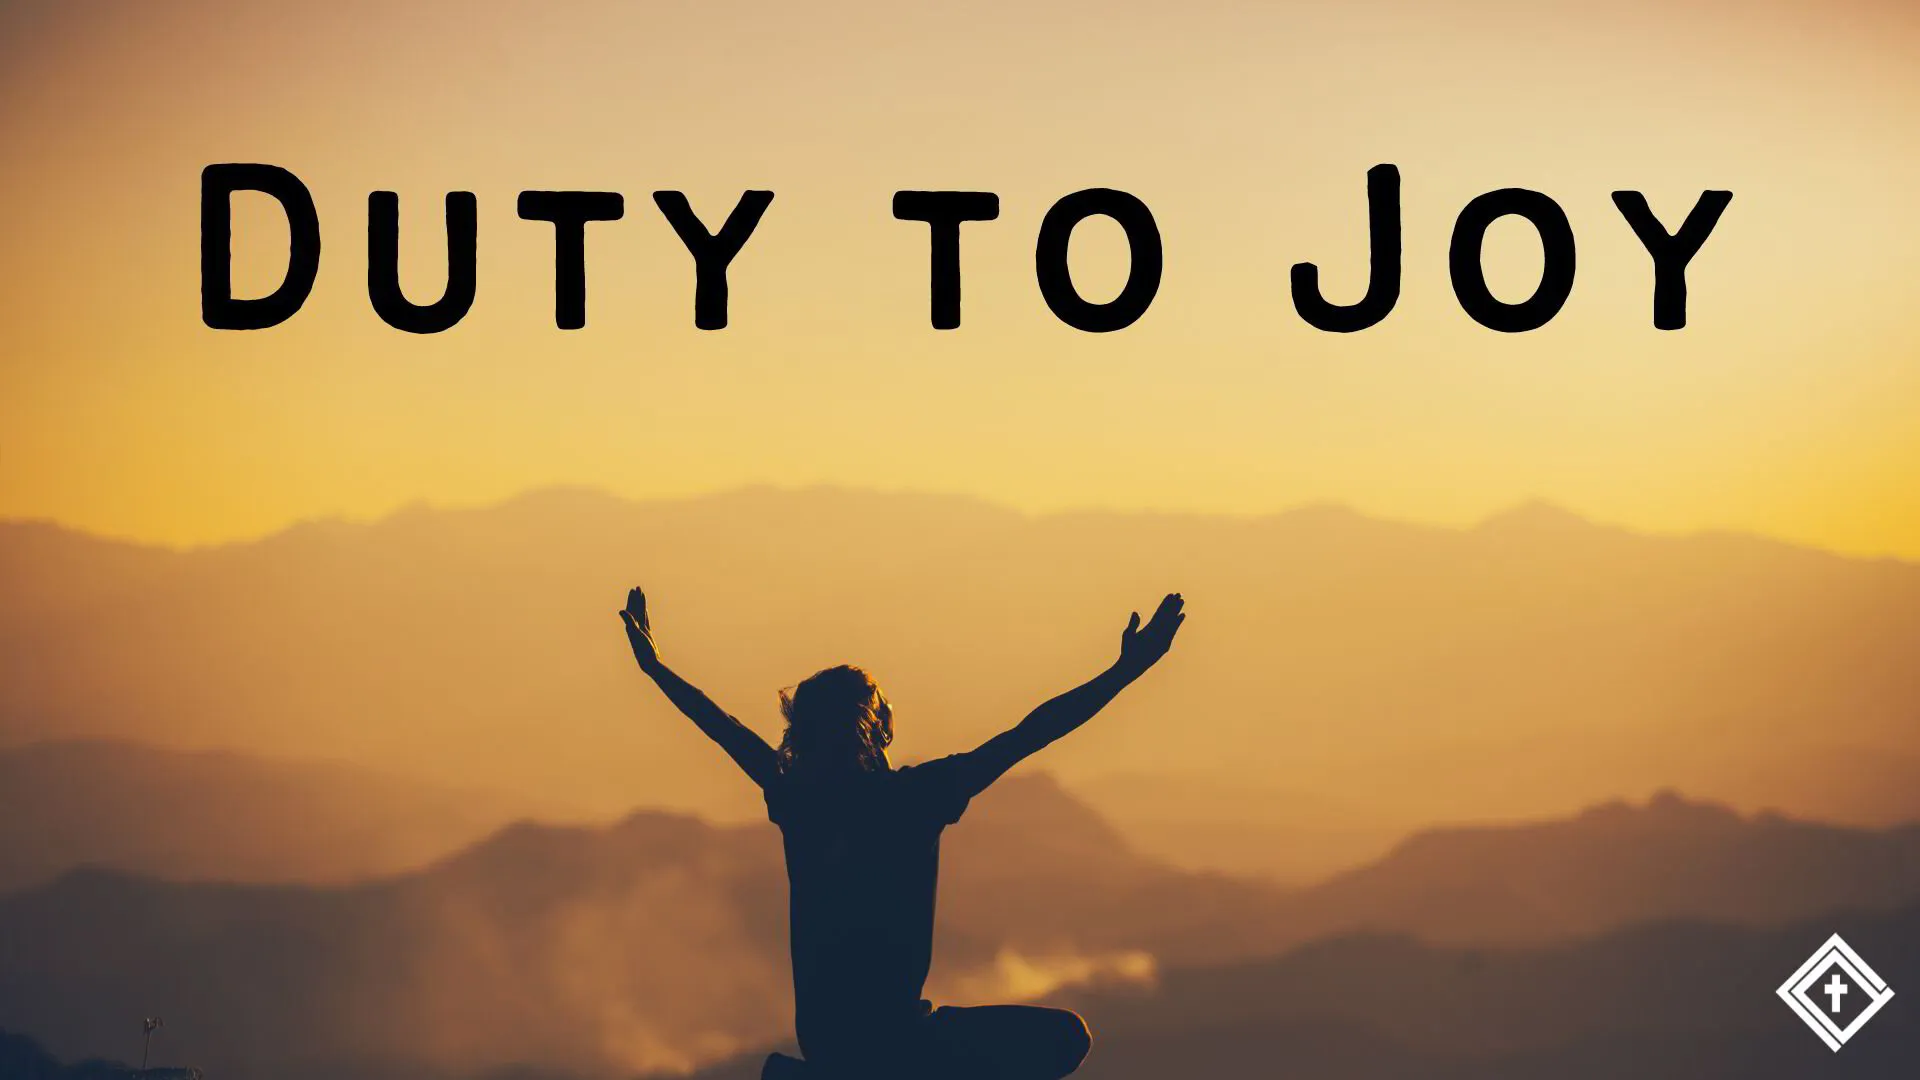 Duty to Joy